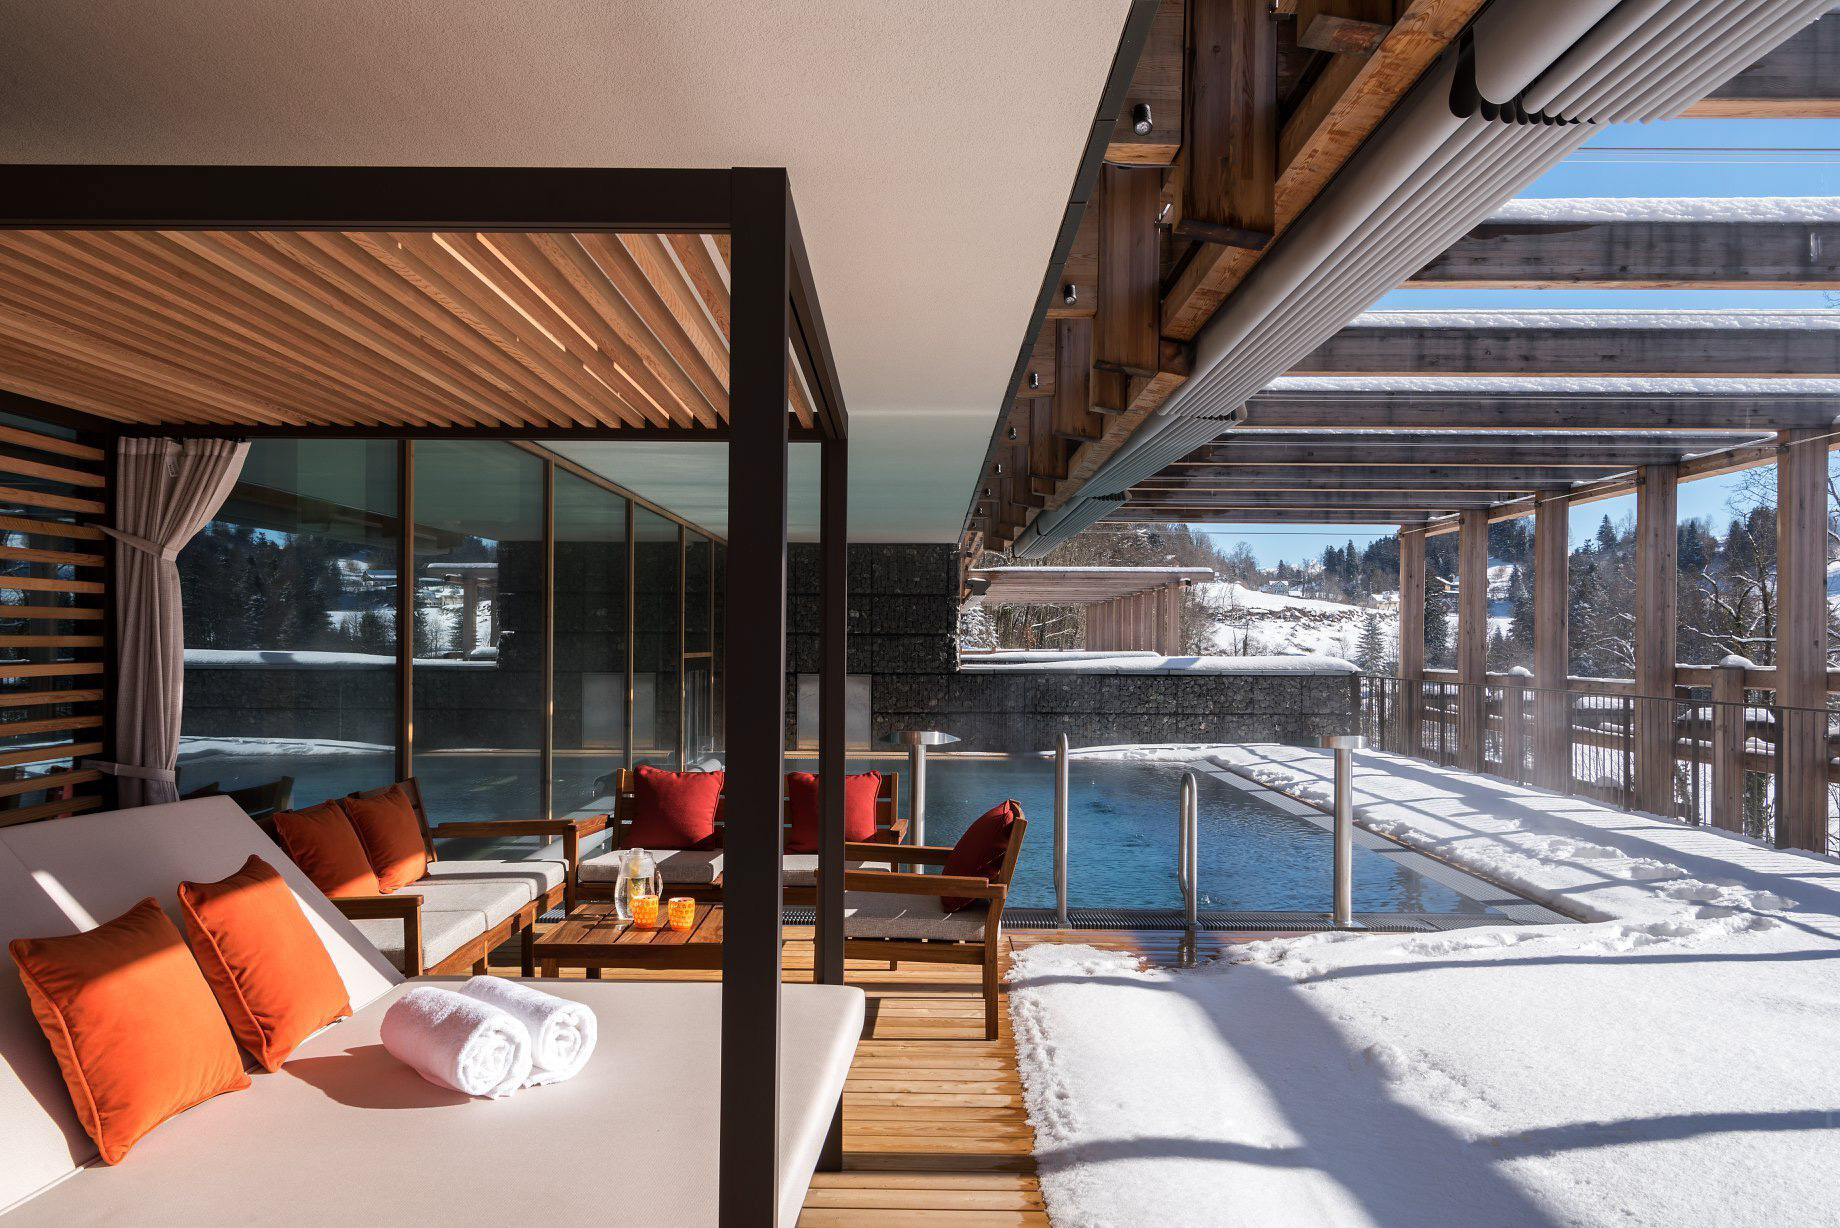 Waldhotel - Burgenstock Hotels & Resort - Obburgen, Switzerland - Outdoor Pool Deck Winter Snow